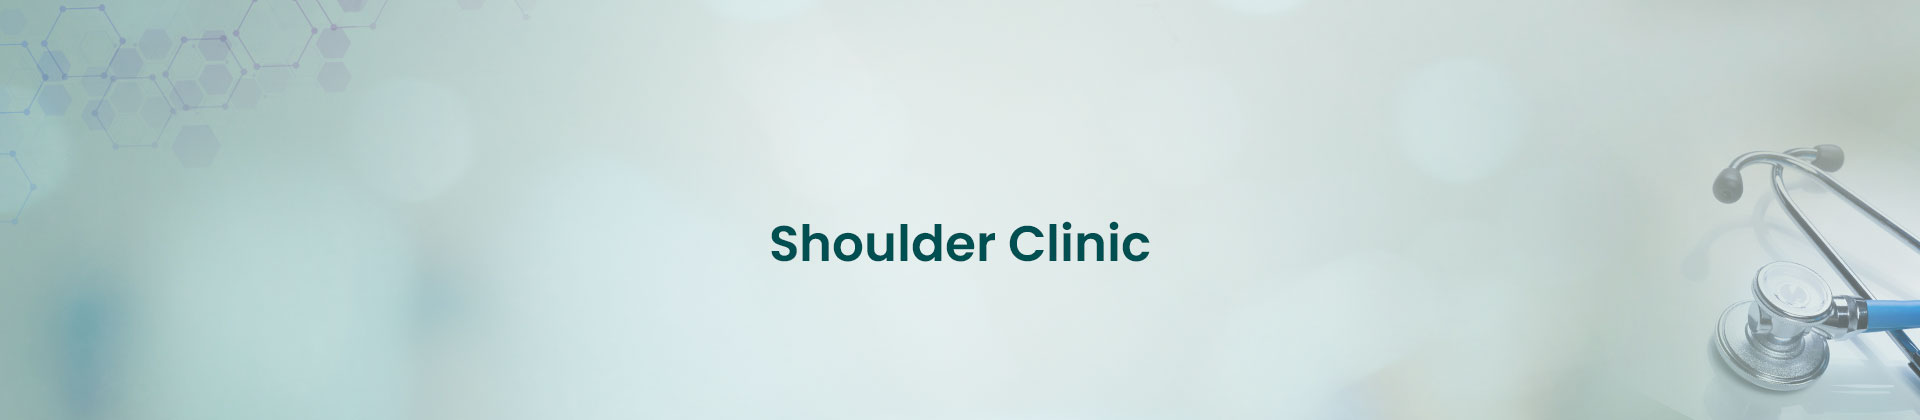 Shoulder Clinic